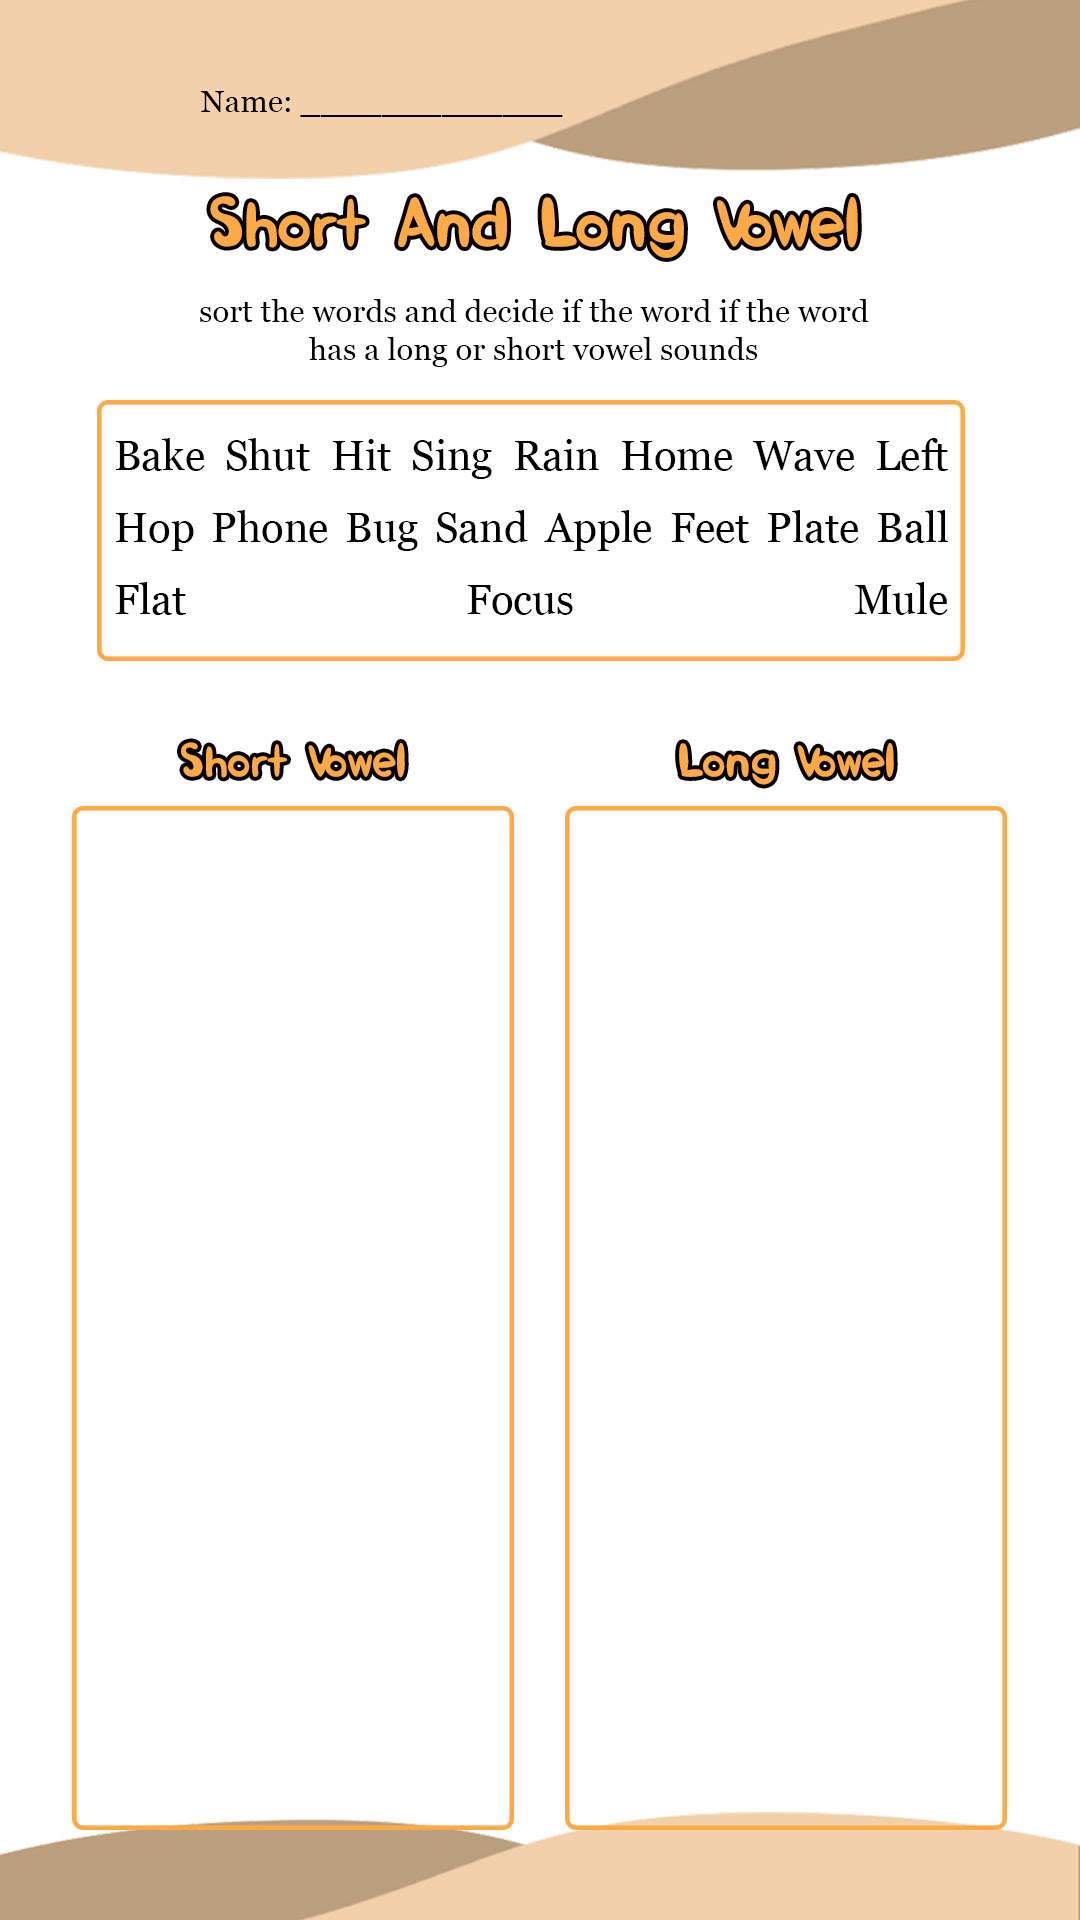 Long Vowel and Short Vowel Worksheets Image